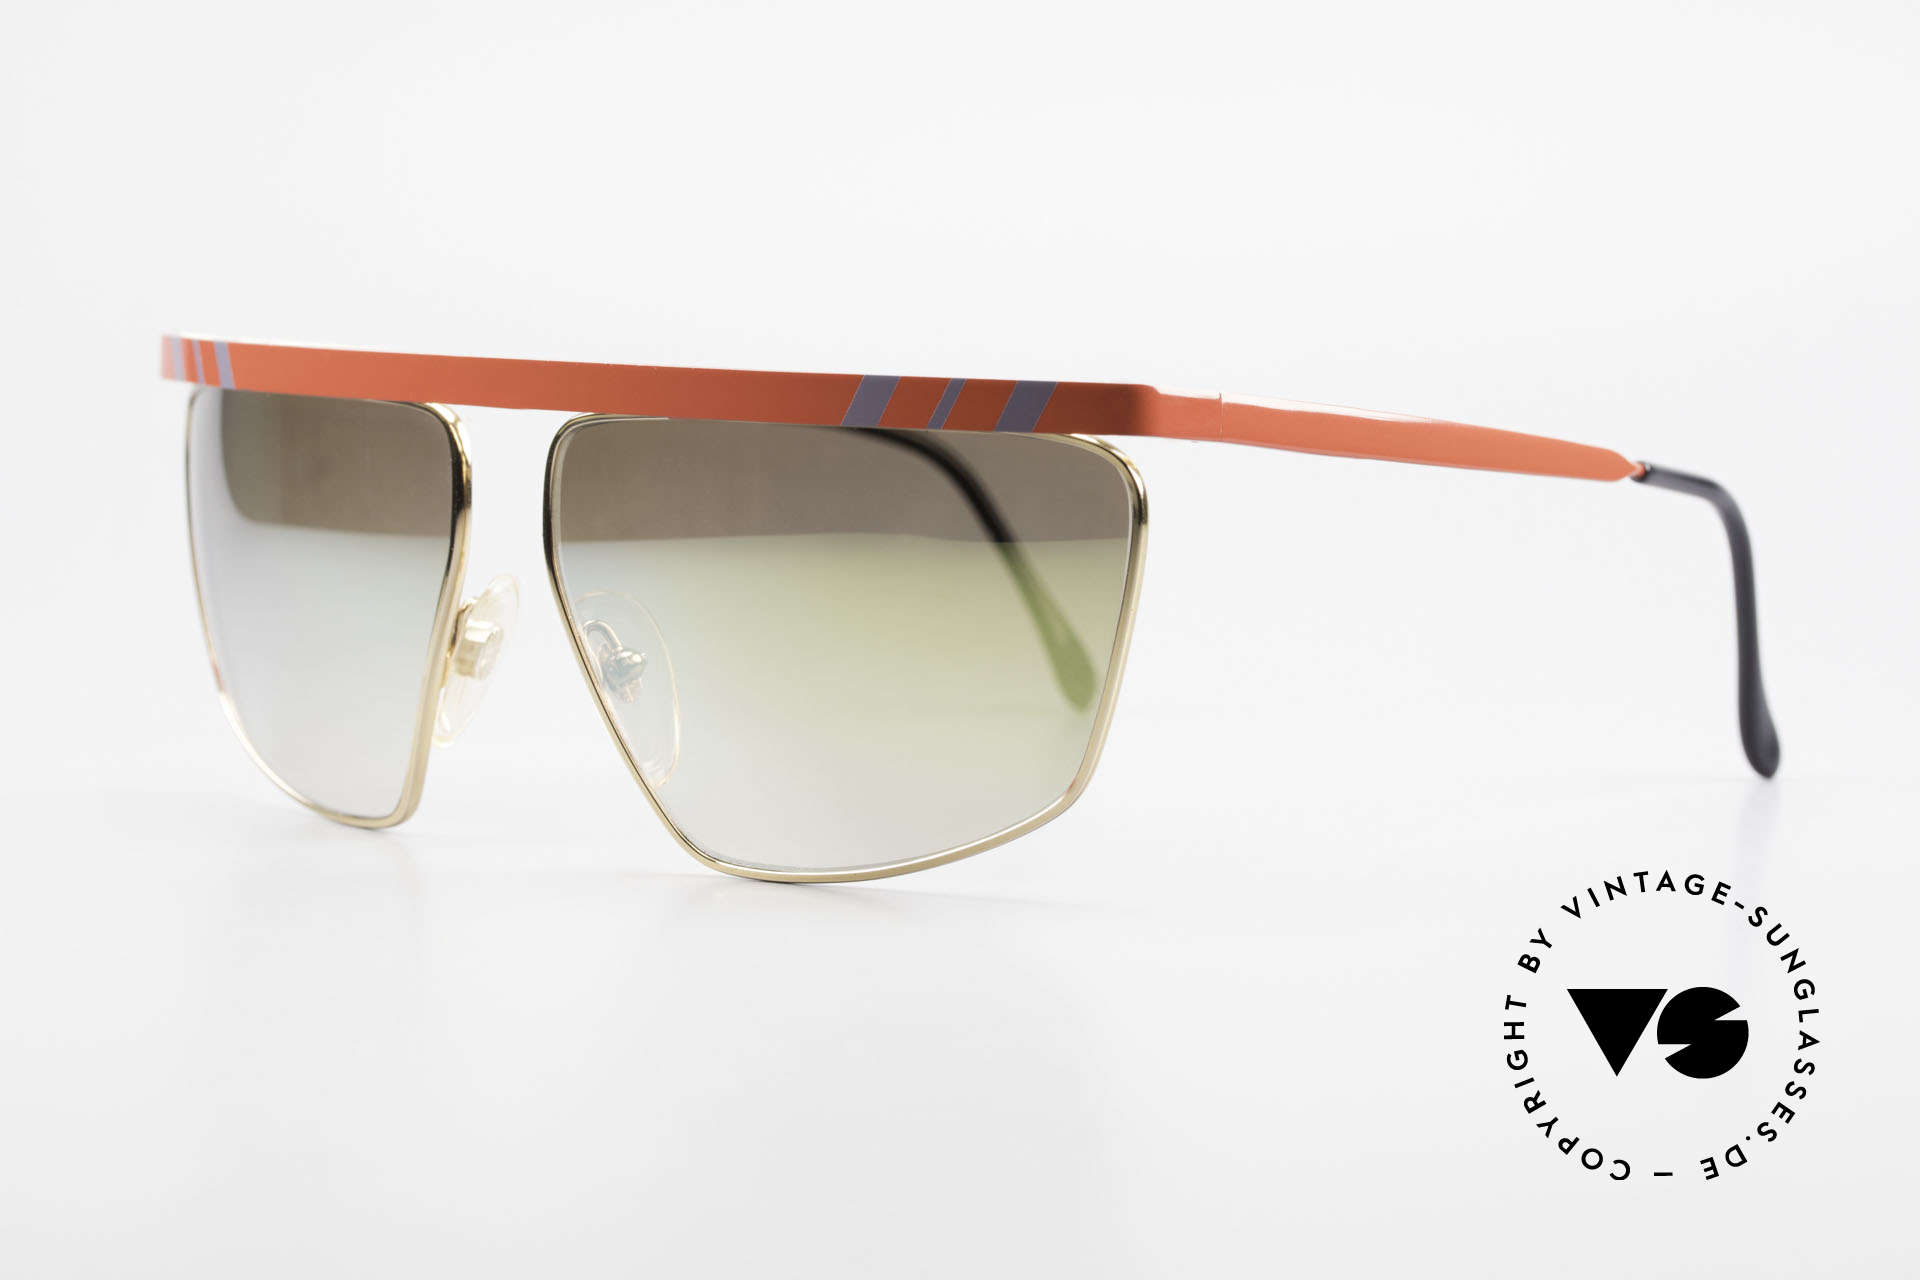 Casanova CN7 Luxus Sonnenbrille Verspiegelt, zudem gold-verspiegelte Sonnengläser (100% UV), Passend für Herren und Damen